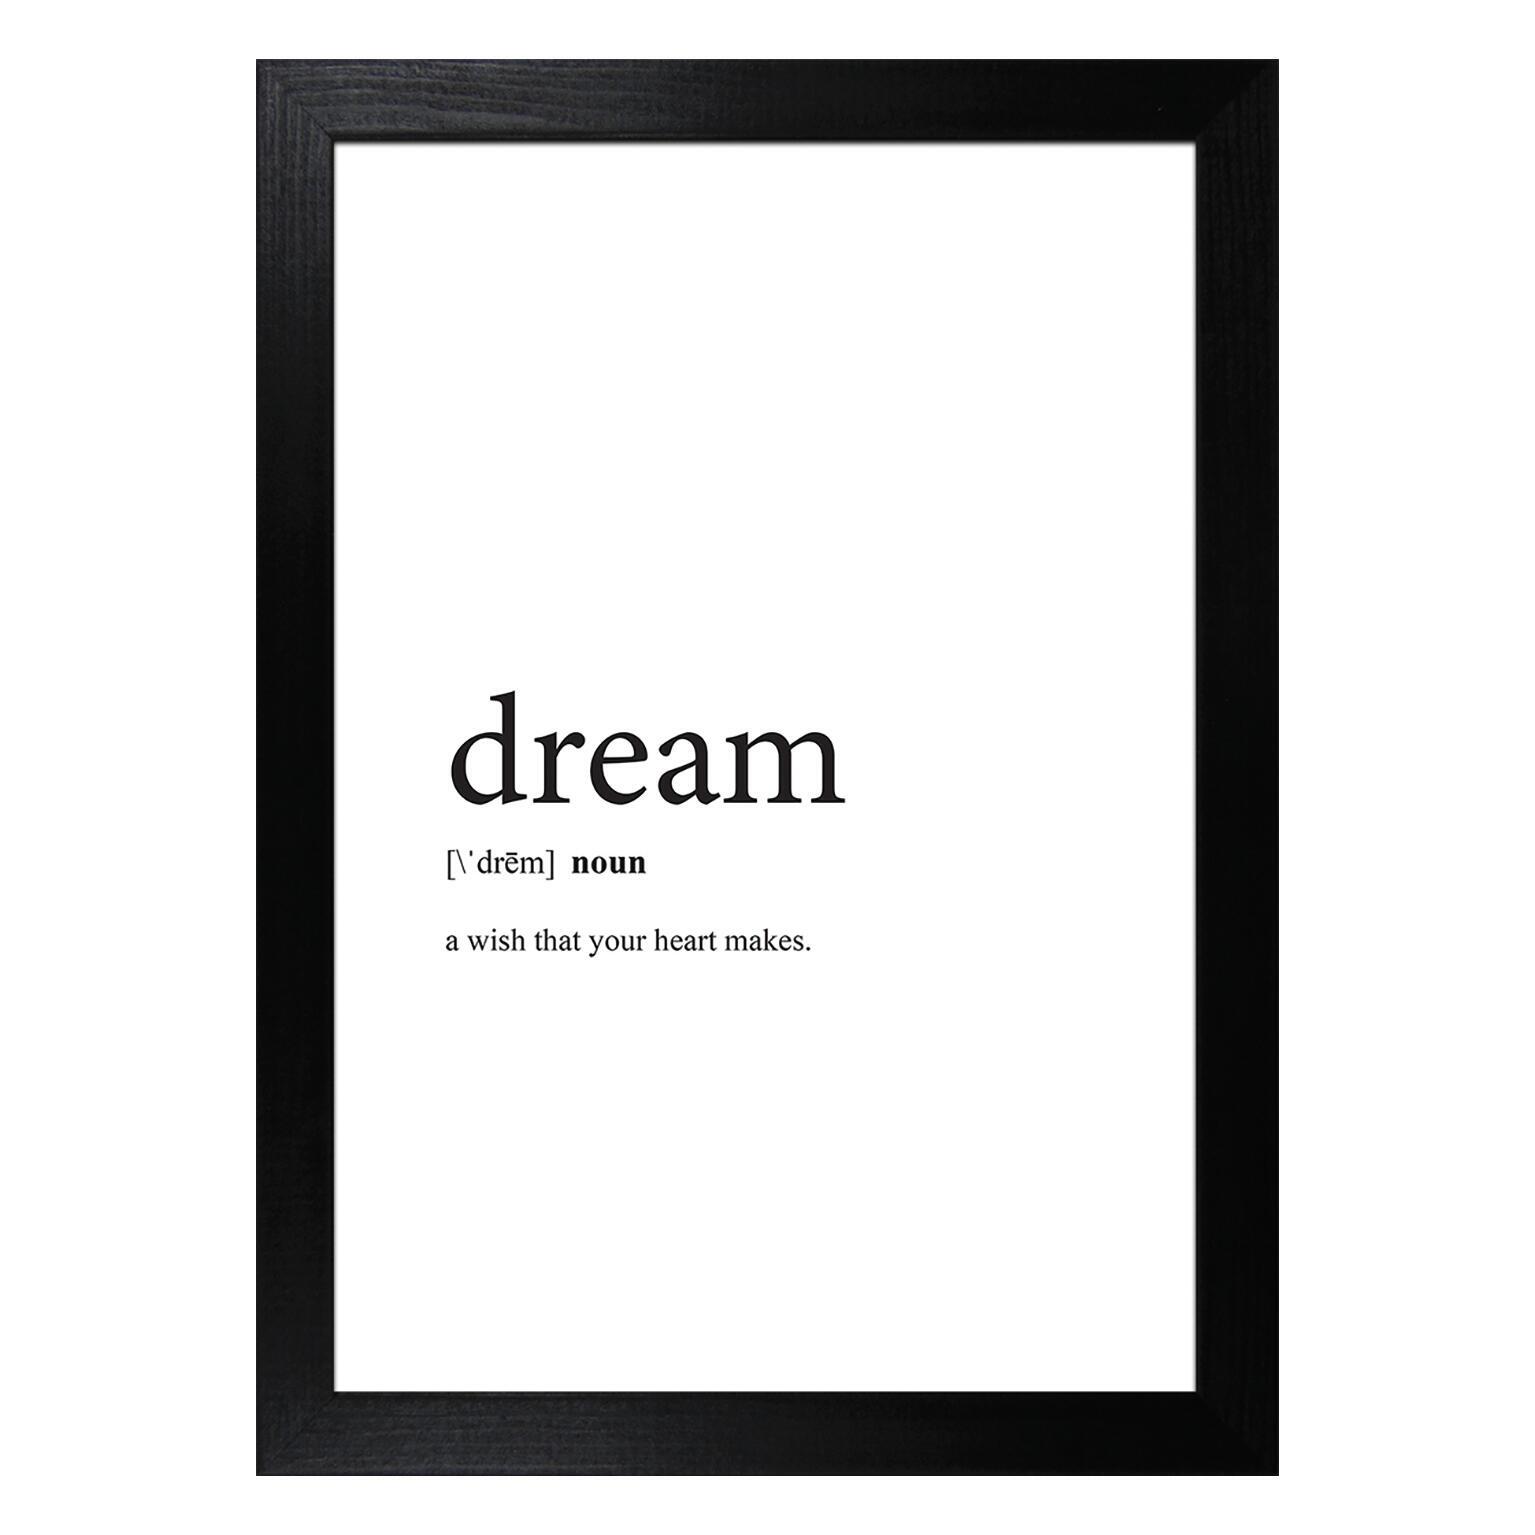 Stampa incorniciata Dream 13x18 cm - 1